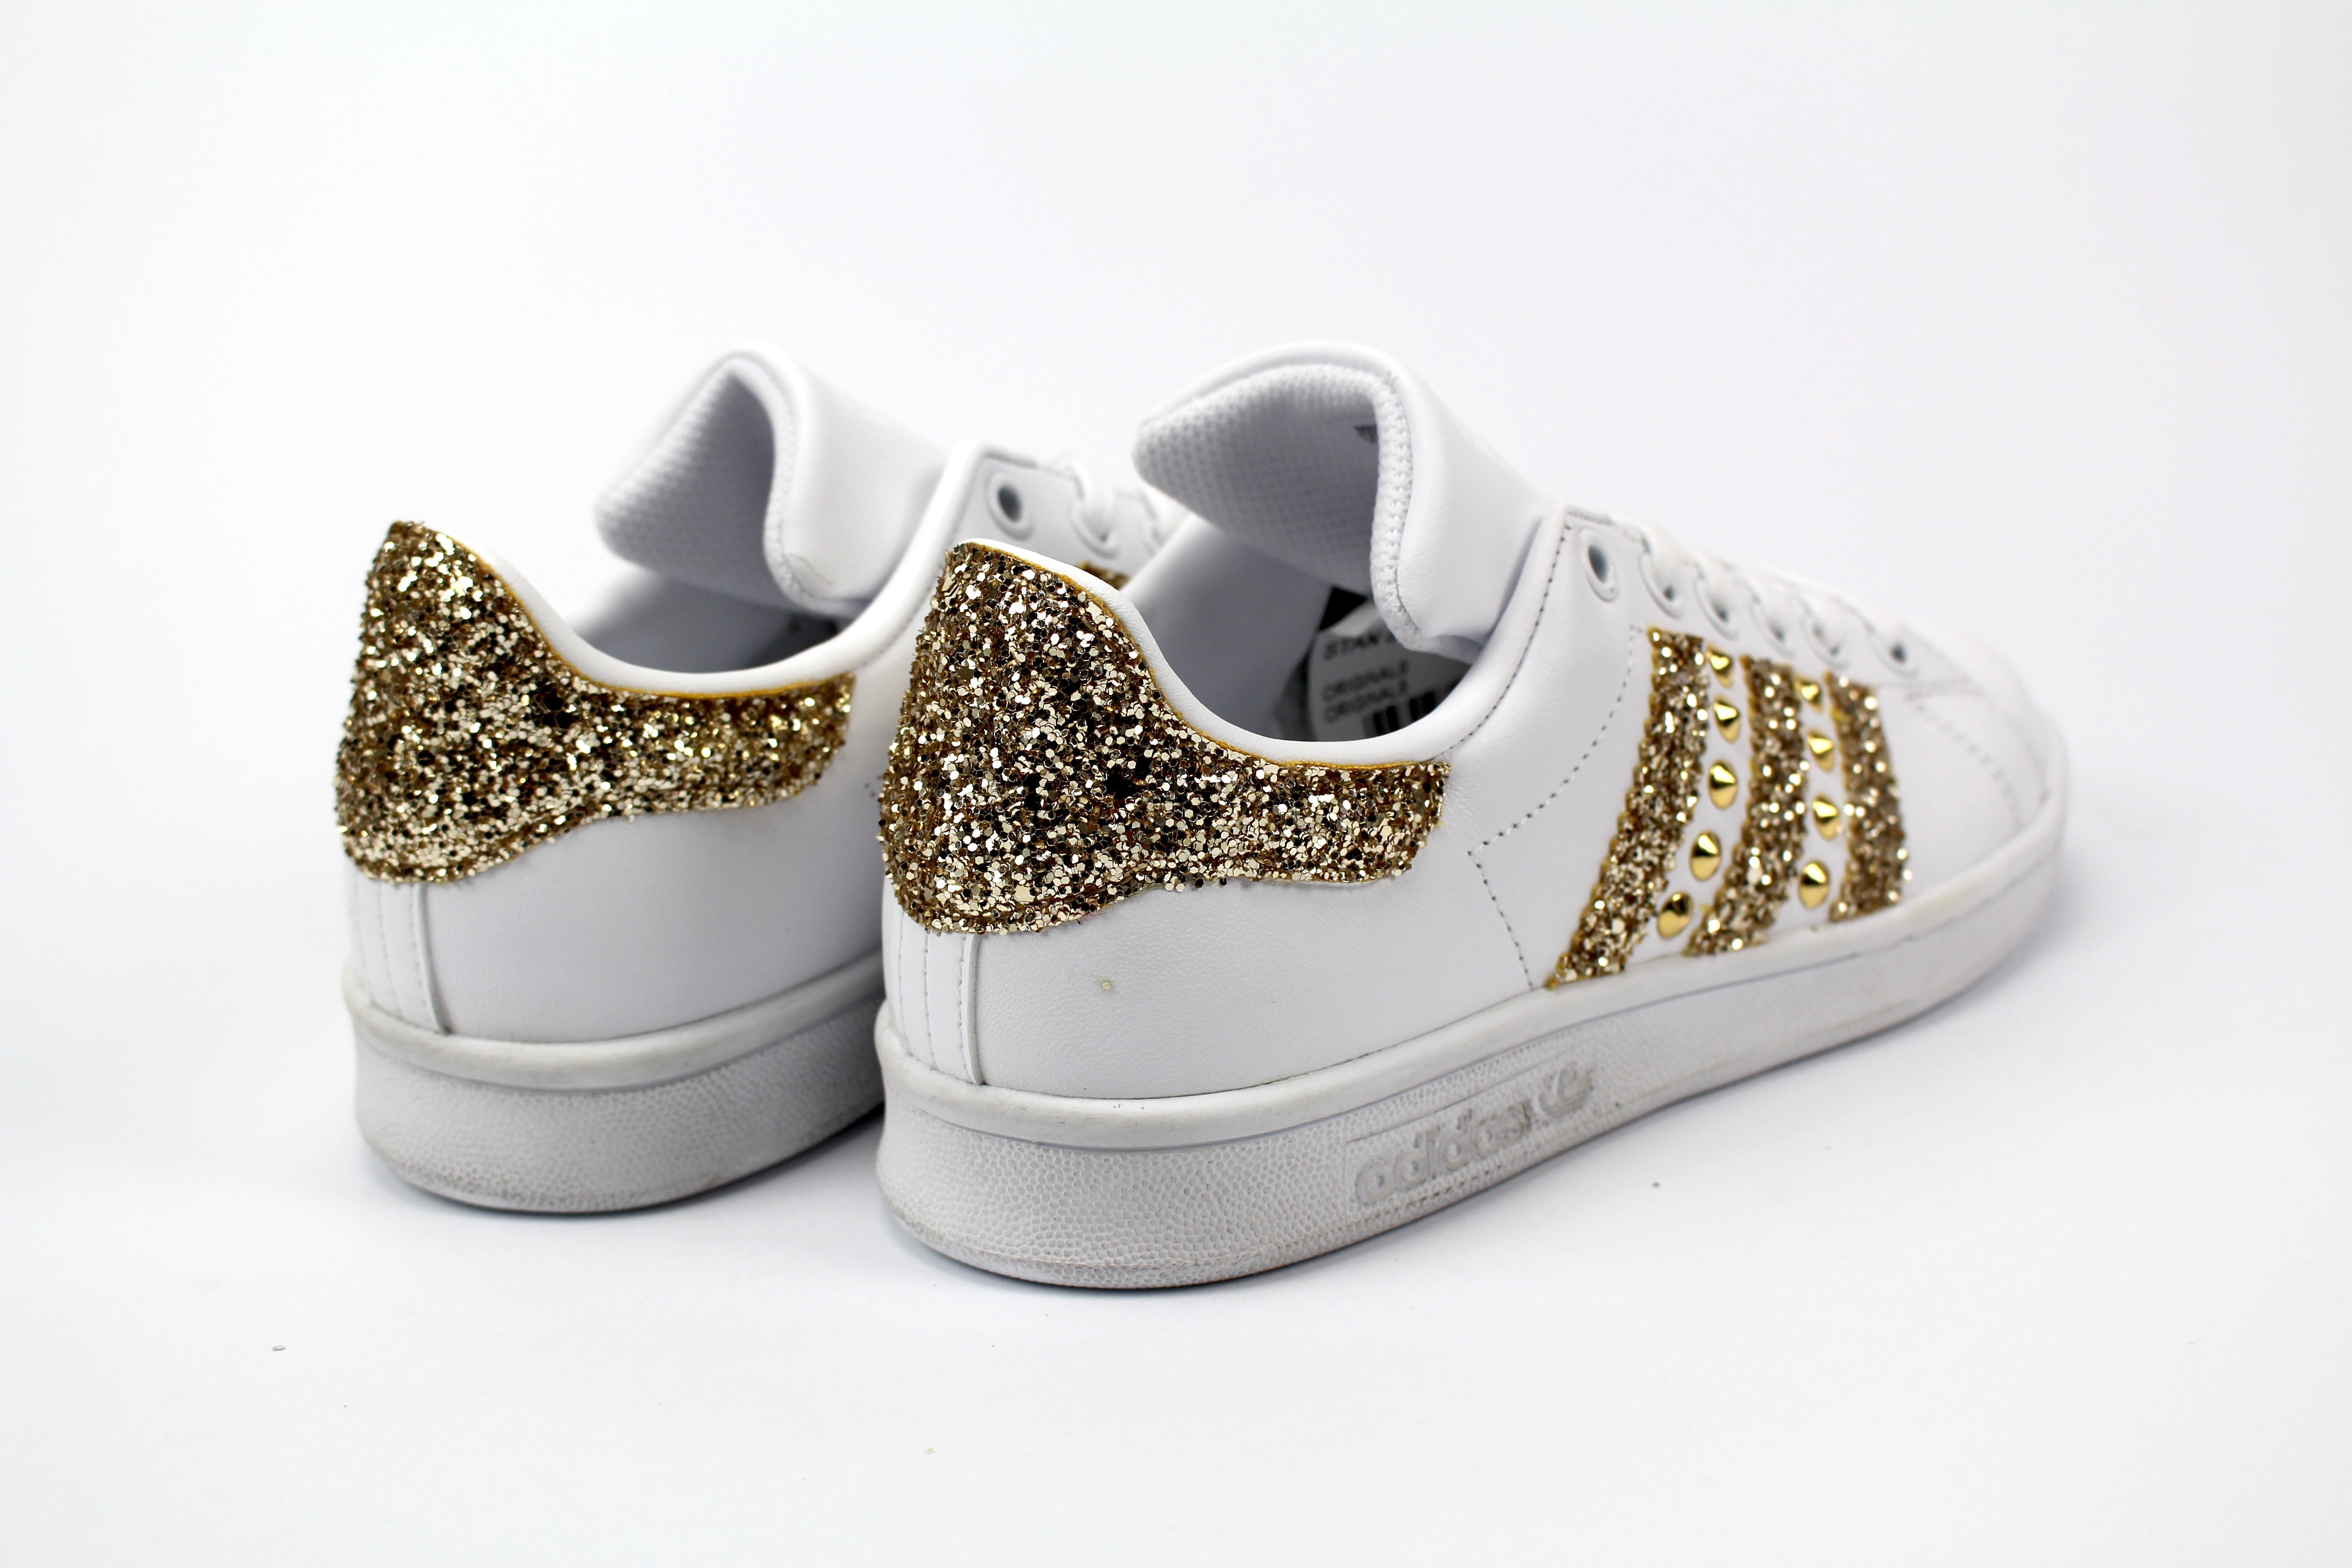 Adidas Stan Smith Personalizzate Gold Glitter & Borchie